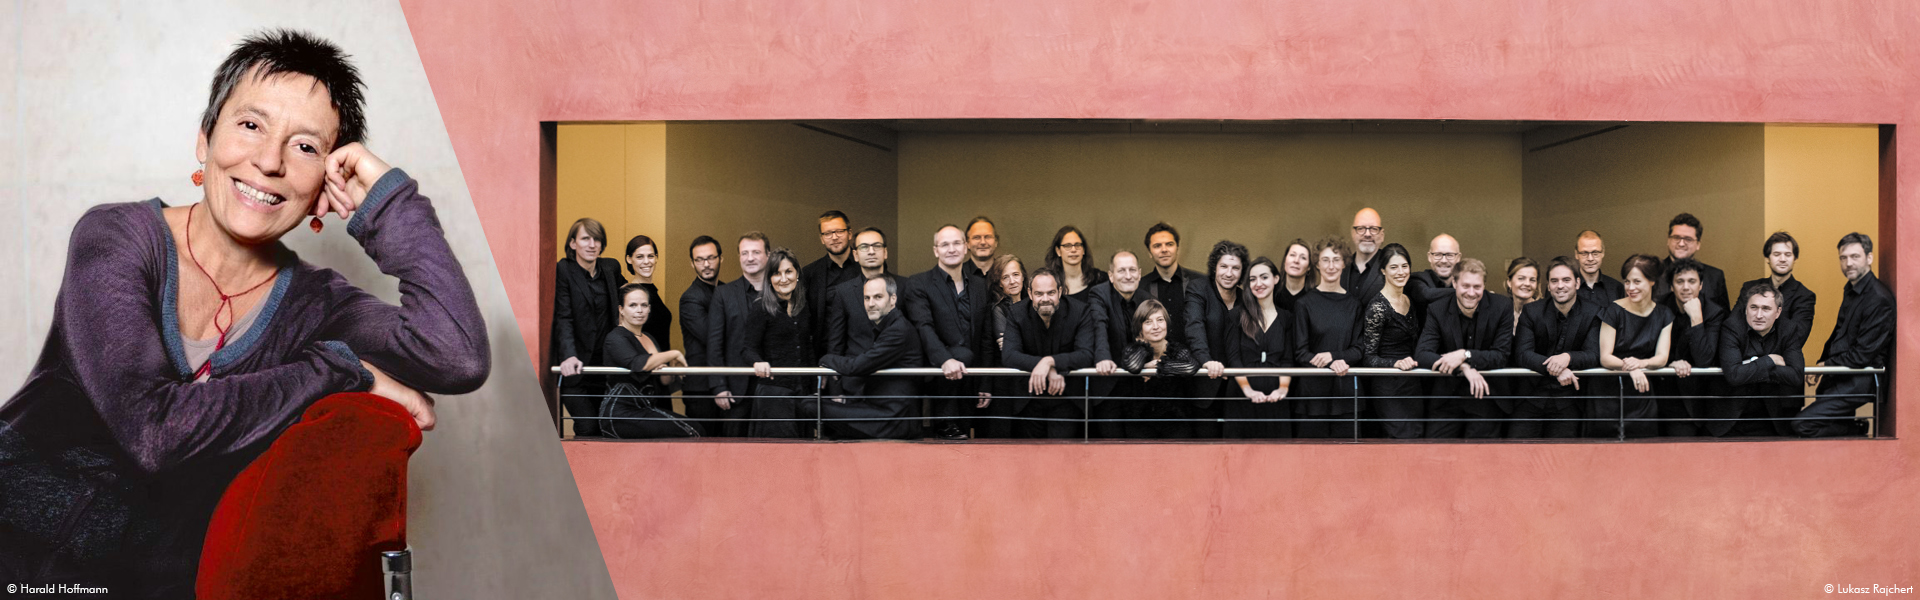 Maria João Pires & l’orchestre de Chambre de Bâle (KOB), direction Trevor Pinnock